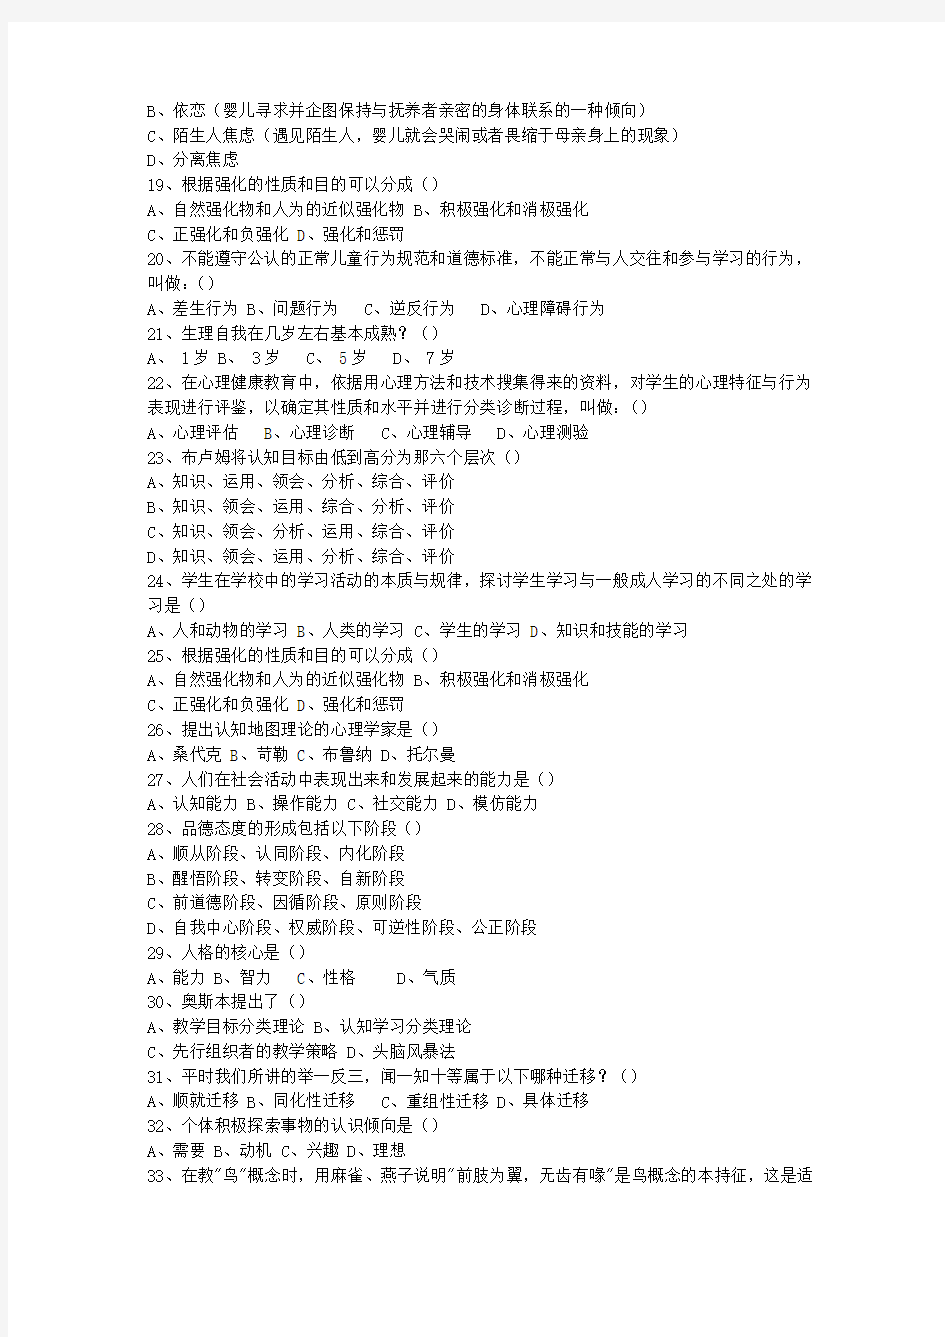 2015河北省教师资格证考试《综合素质》最新考试题库